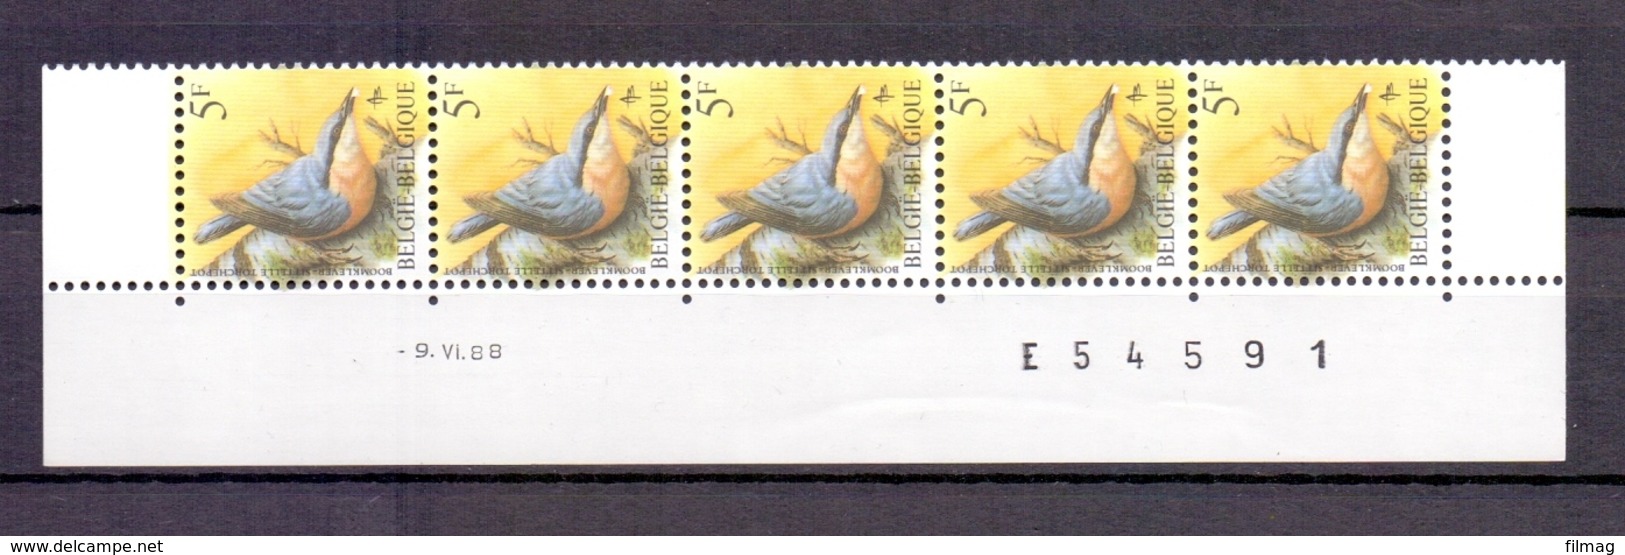 2294 BOOMKLEVER DATUMSTRIP 9VI88 POSTFRIS** A309 - 1985-.. Oiseaux (Buzin)